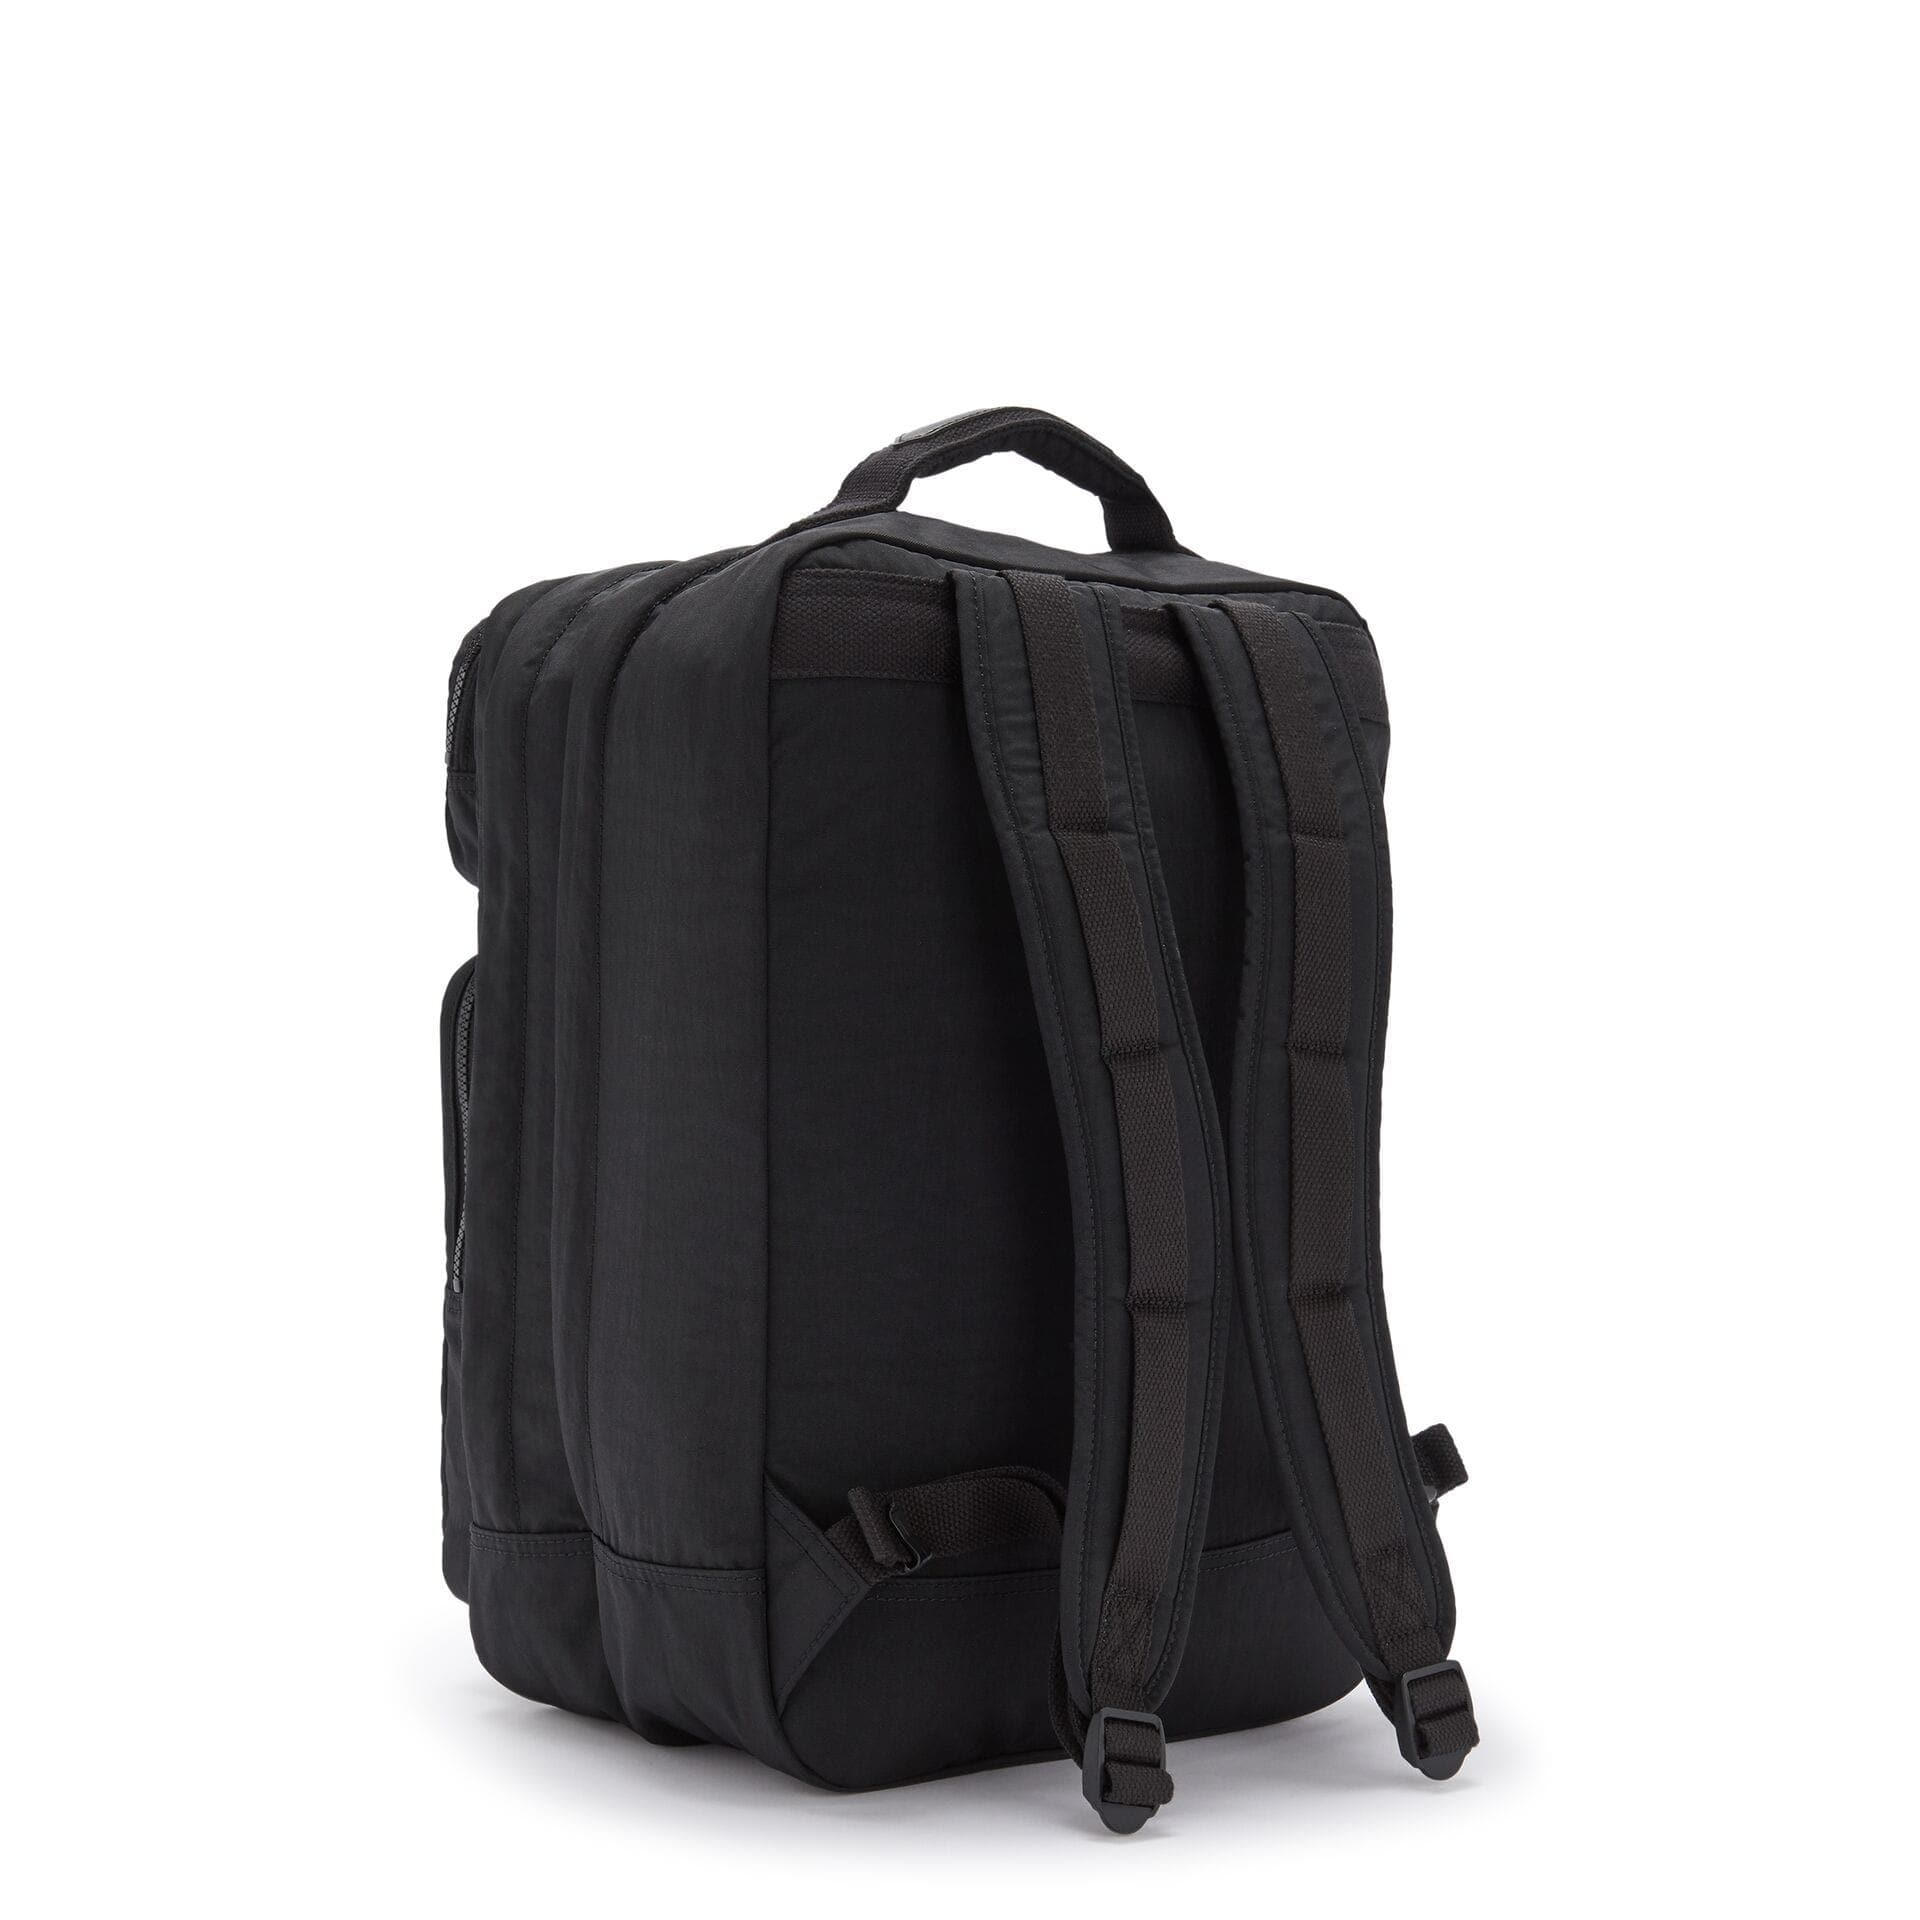 KIPLING-SCOTTY-Large Backpack with Laptop Sleeve-True Black-I7131-J99 - I7131-J99